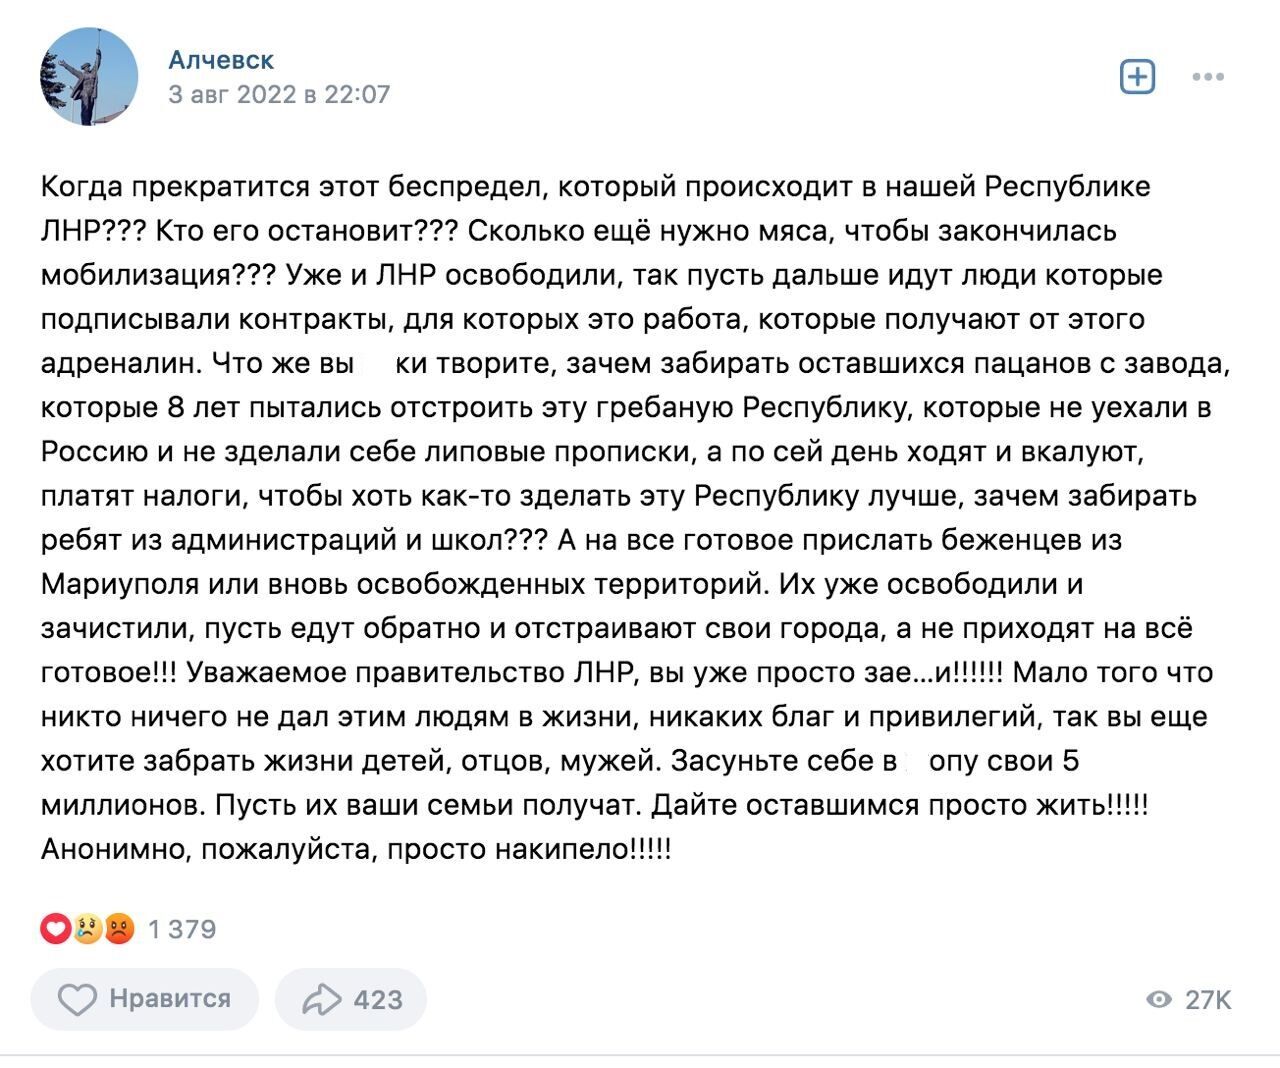 Анонимный пост в одной из самых популярных групп Алчевска